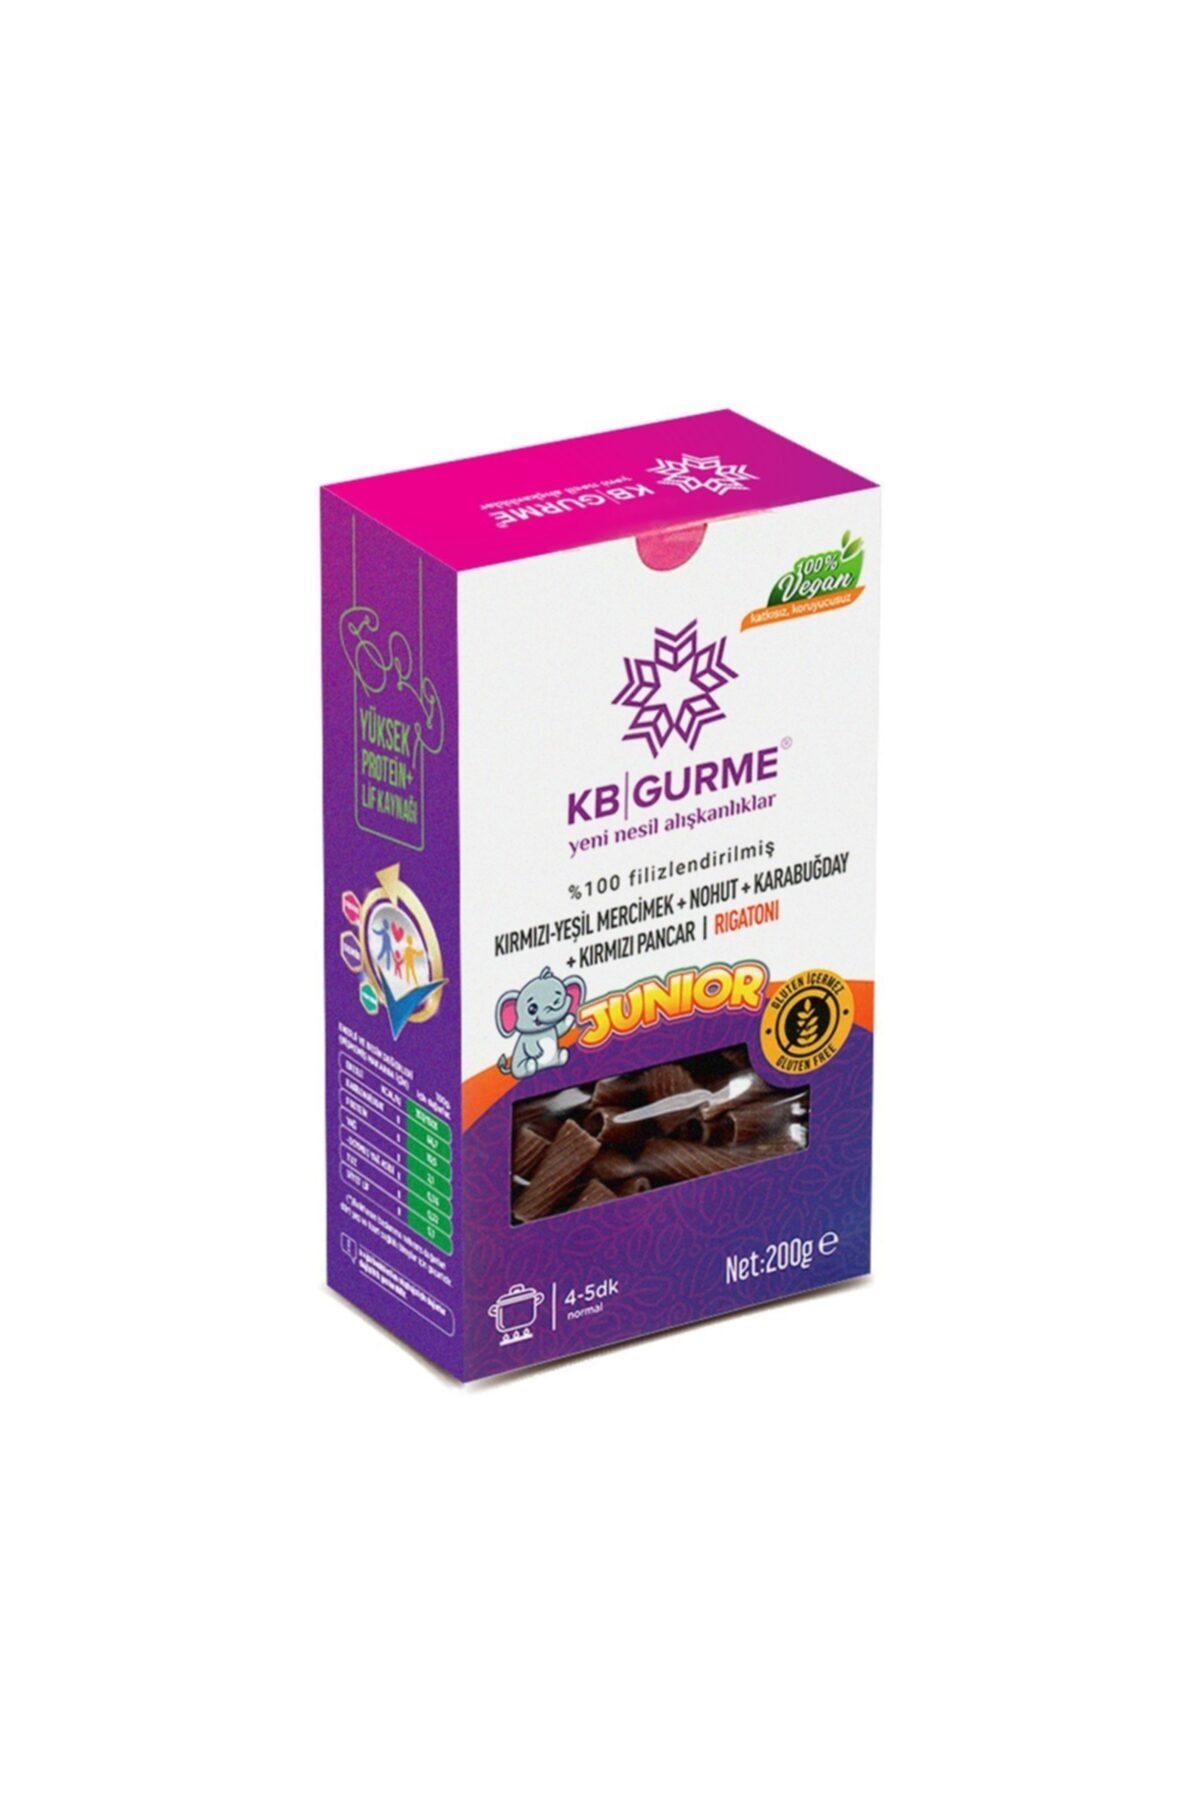 Kbgurme Glutensiz & Vegan Filizlendirilmiş Sebzeli Premium Junior Rigatoni 200 gr